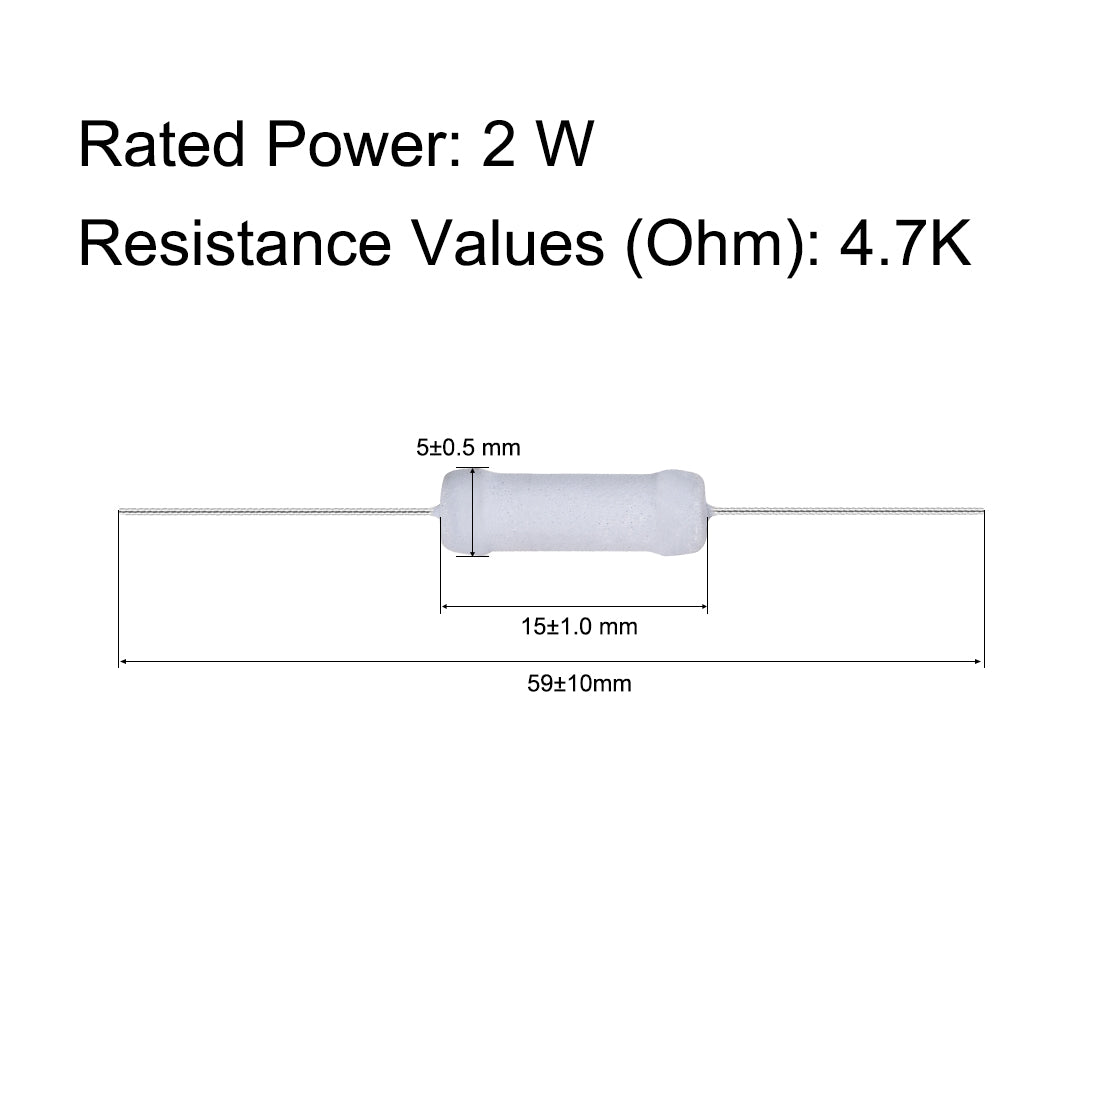 uxcell Uxcell 30pcs 2W 2 Watt Metal Oxide Film Resistor Axile Lead 4.7K Ohm ±5% Tolerance